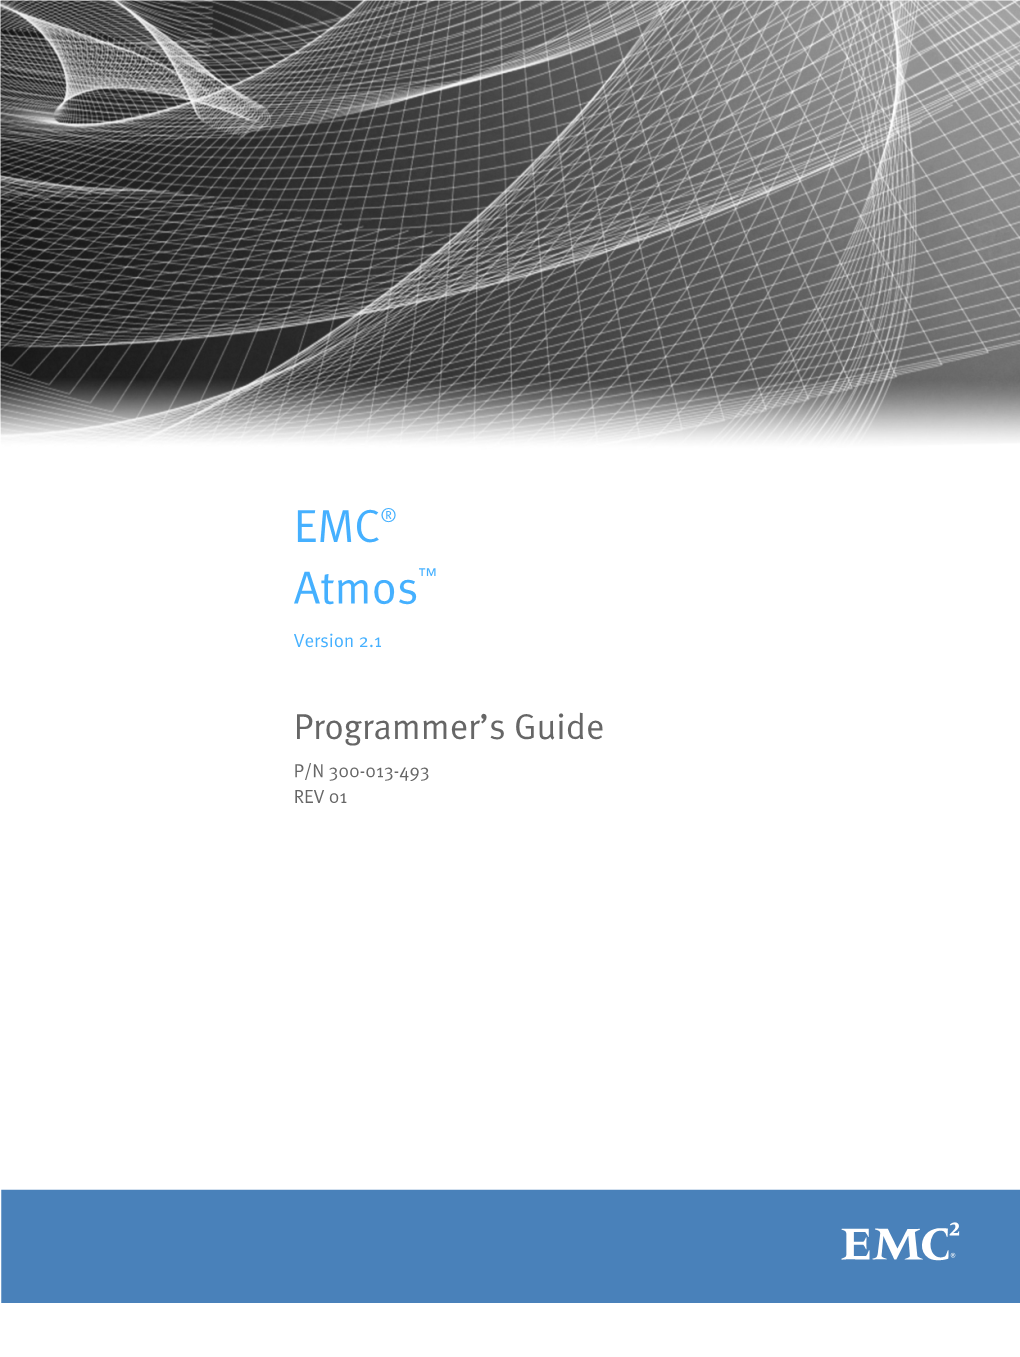 EMC Atmos 2.0 Programmer's Guide